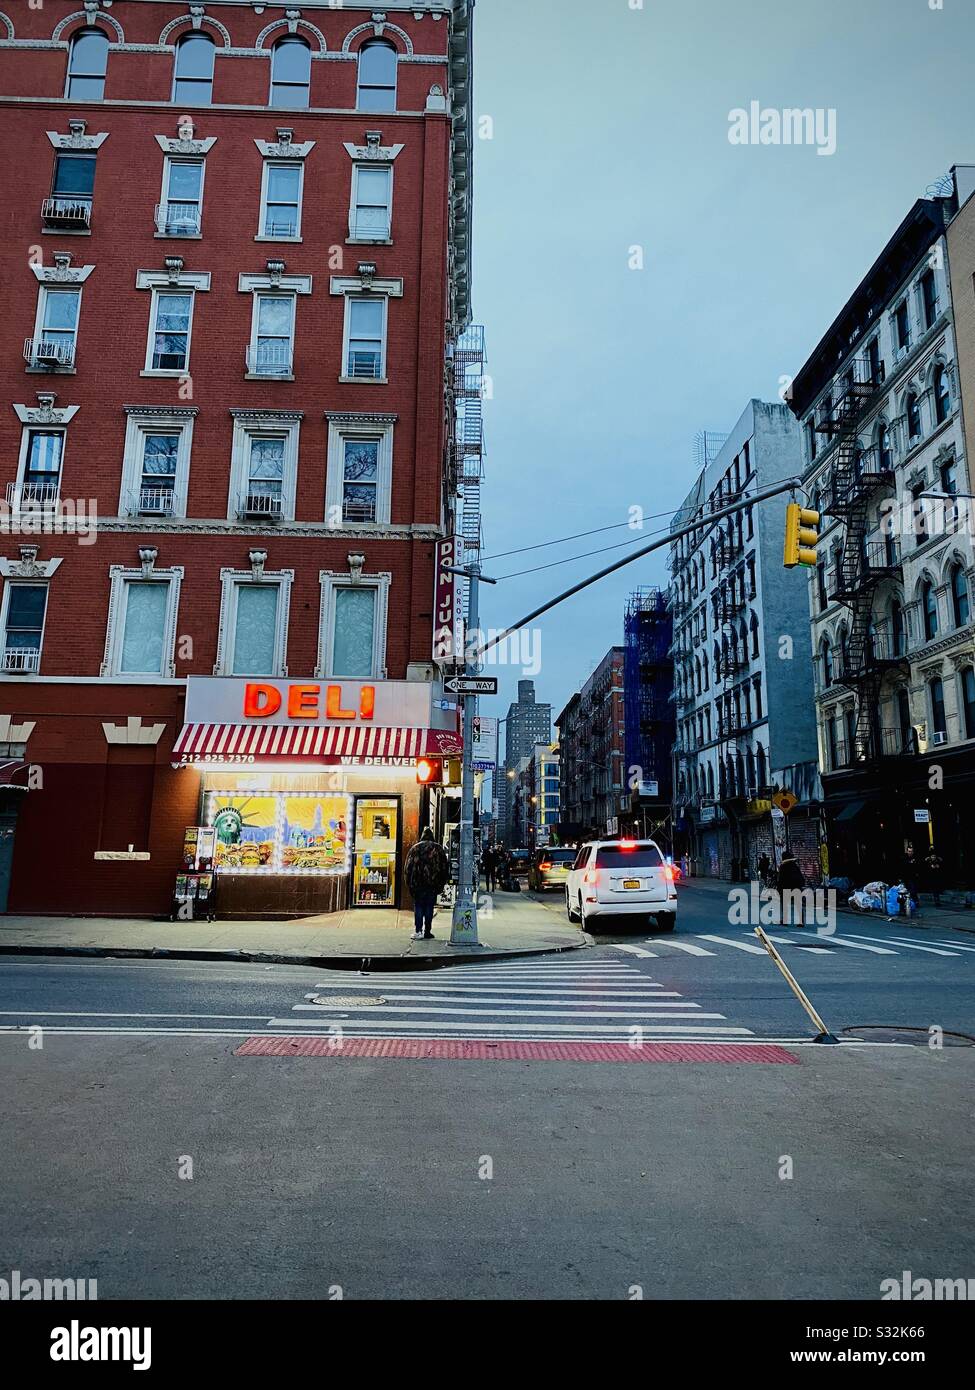 Ein Deli auf der New Yorker Straße in der Abenddämmerung. Manhattan, New York, USA. Stockfoto